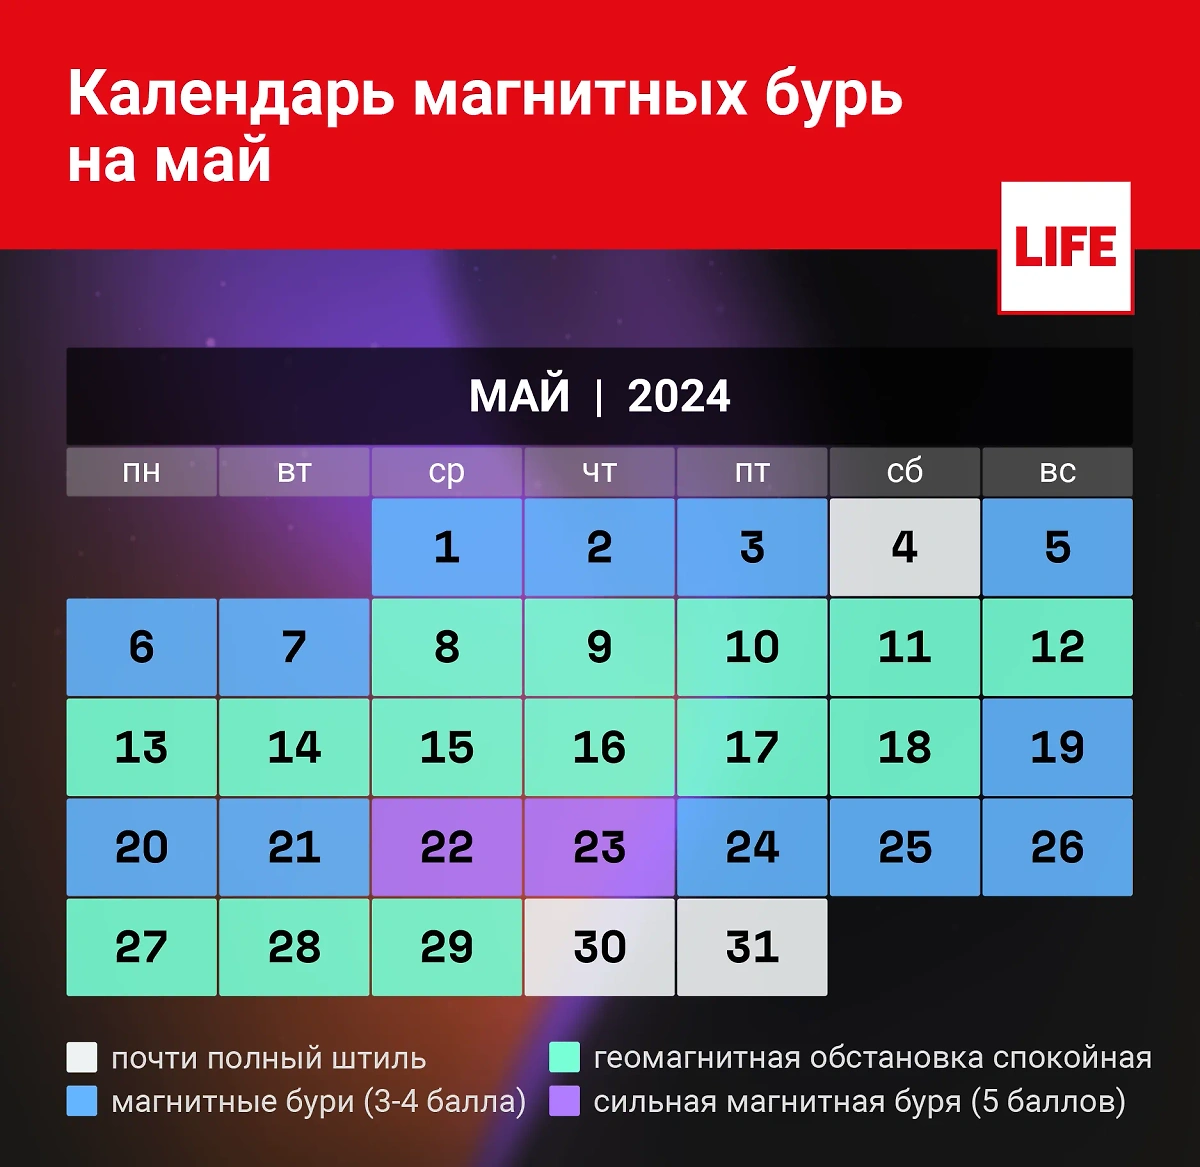 Календарь магнитных бурь на май 2024 года. Инфографика © Life.ru